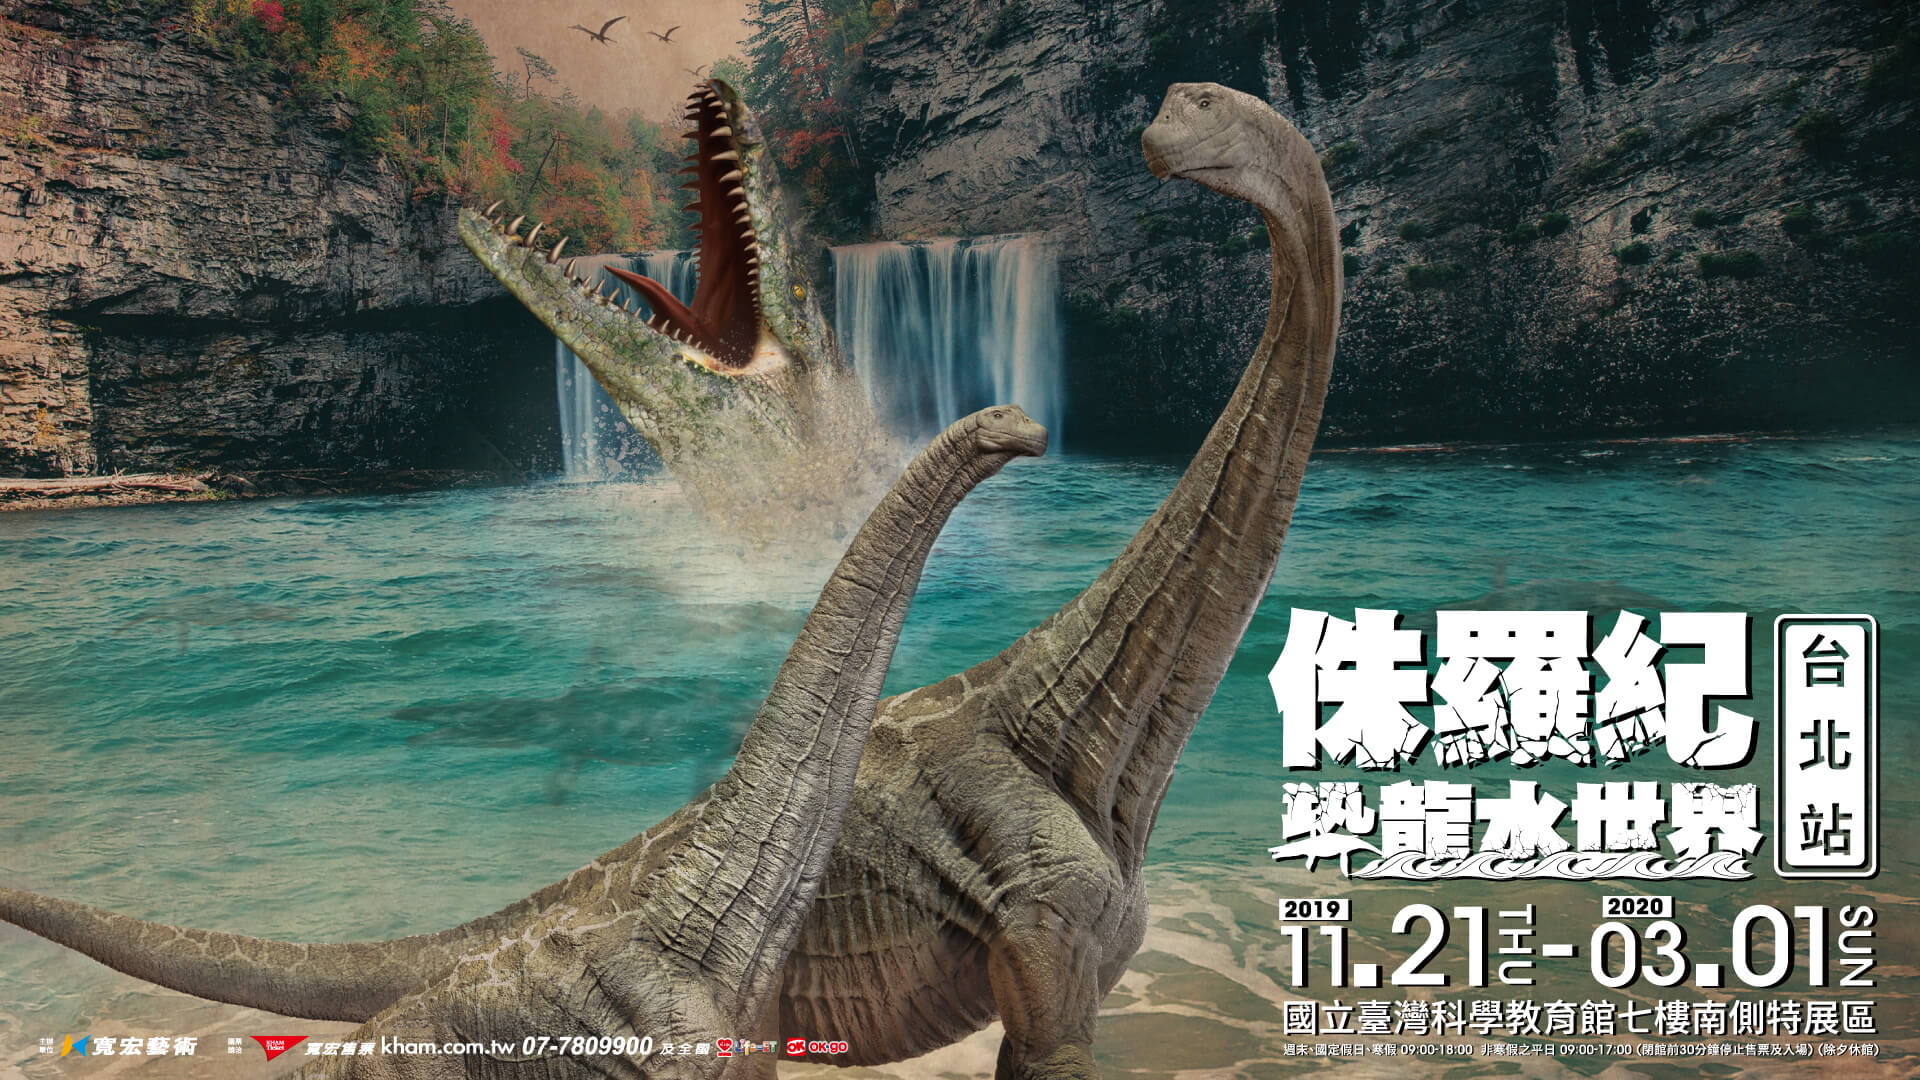 Jurassic_Dinosaur_Water_Park